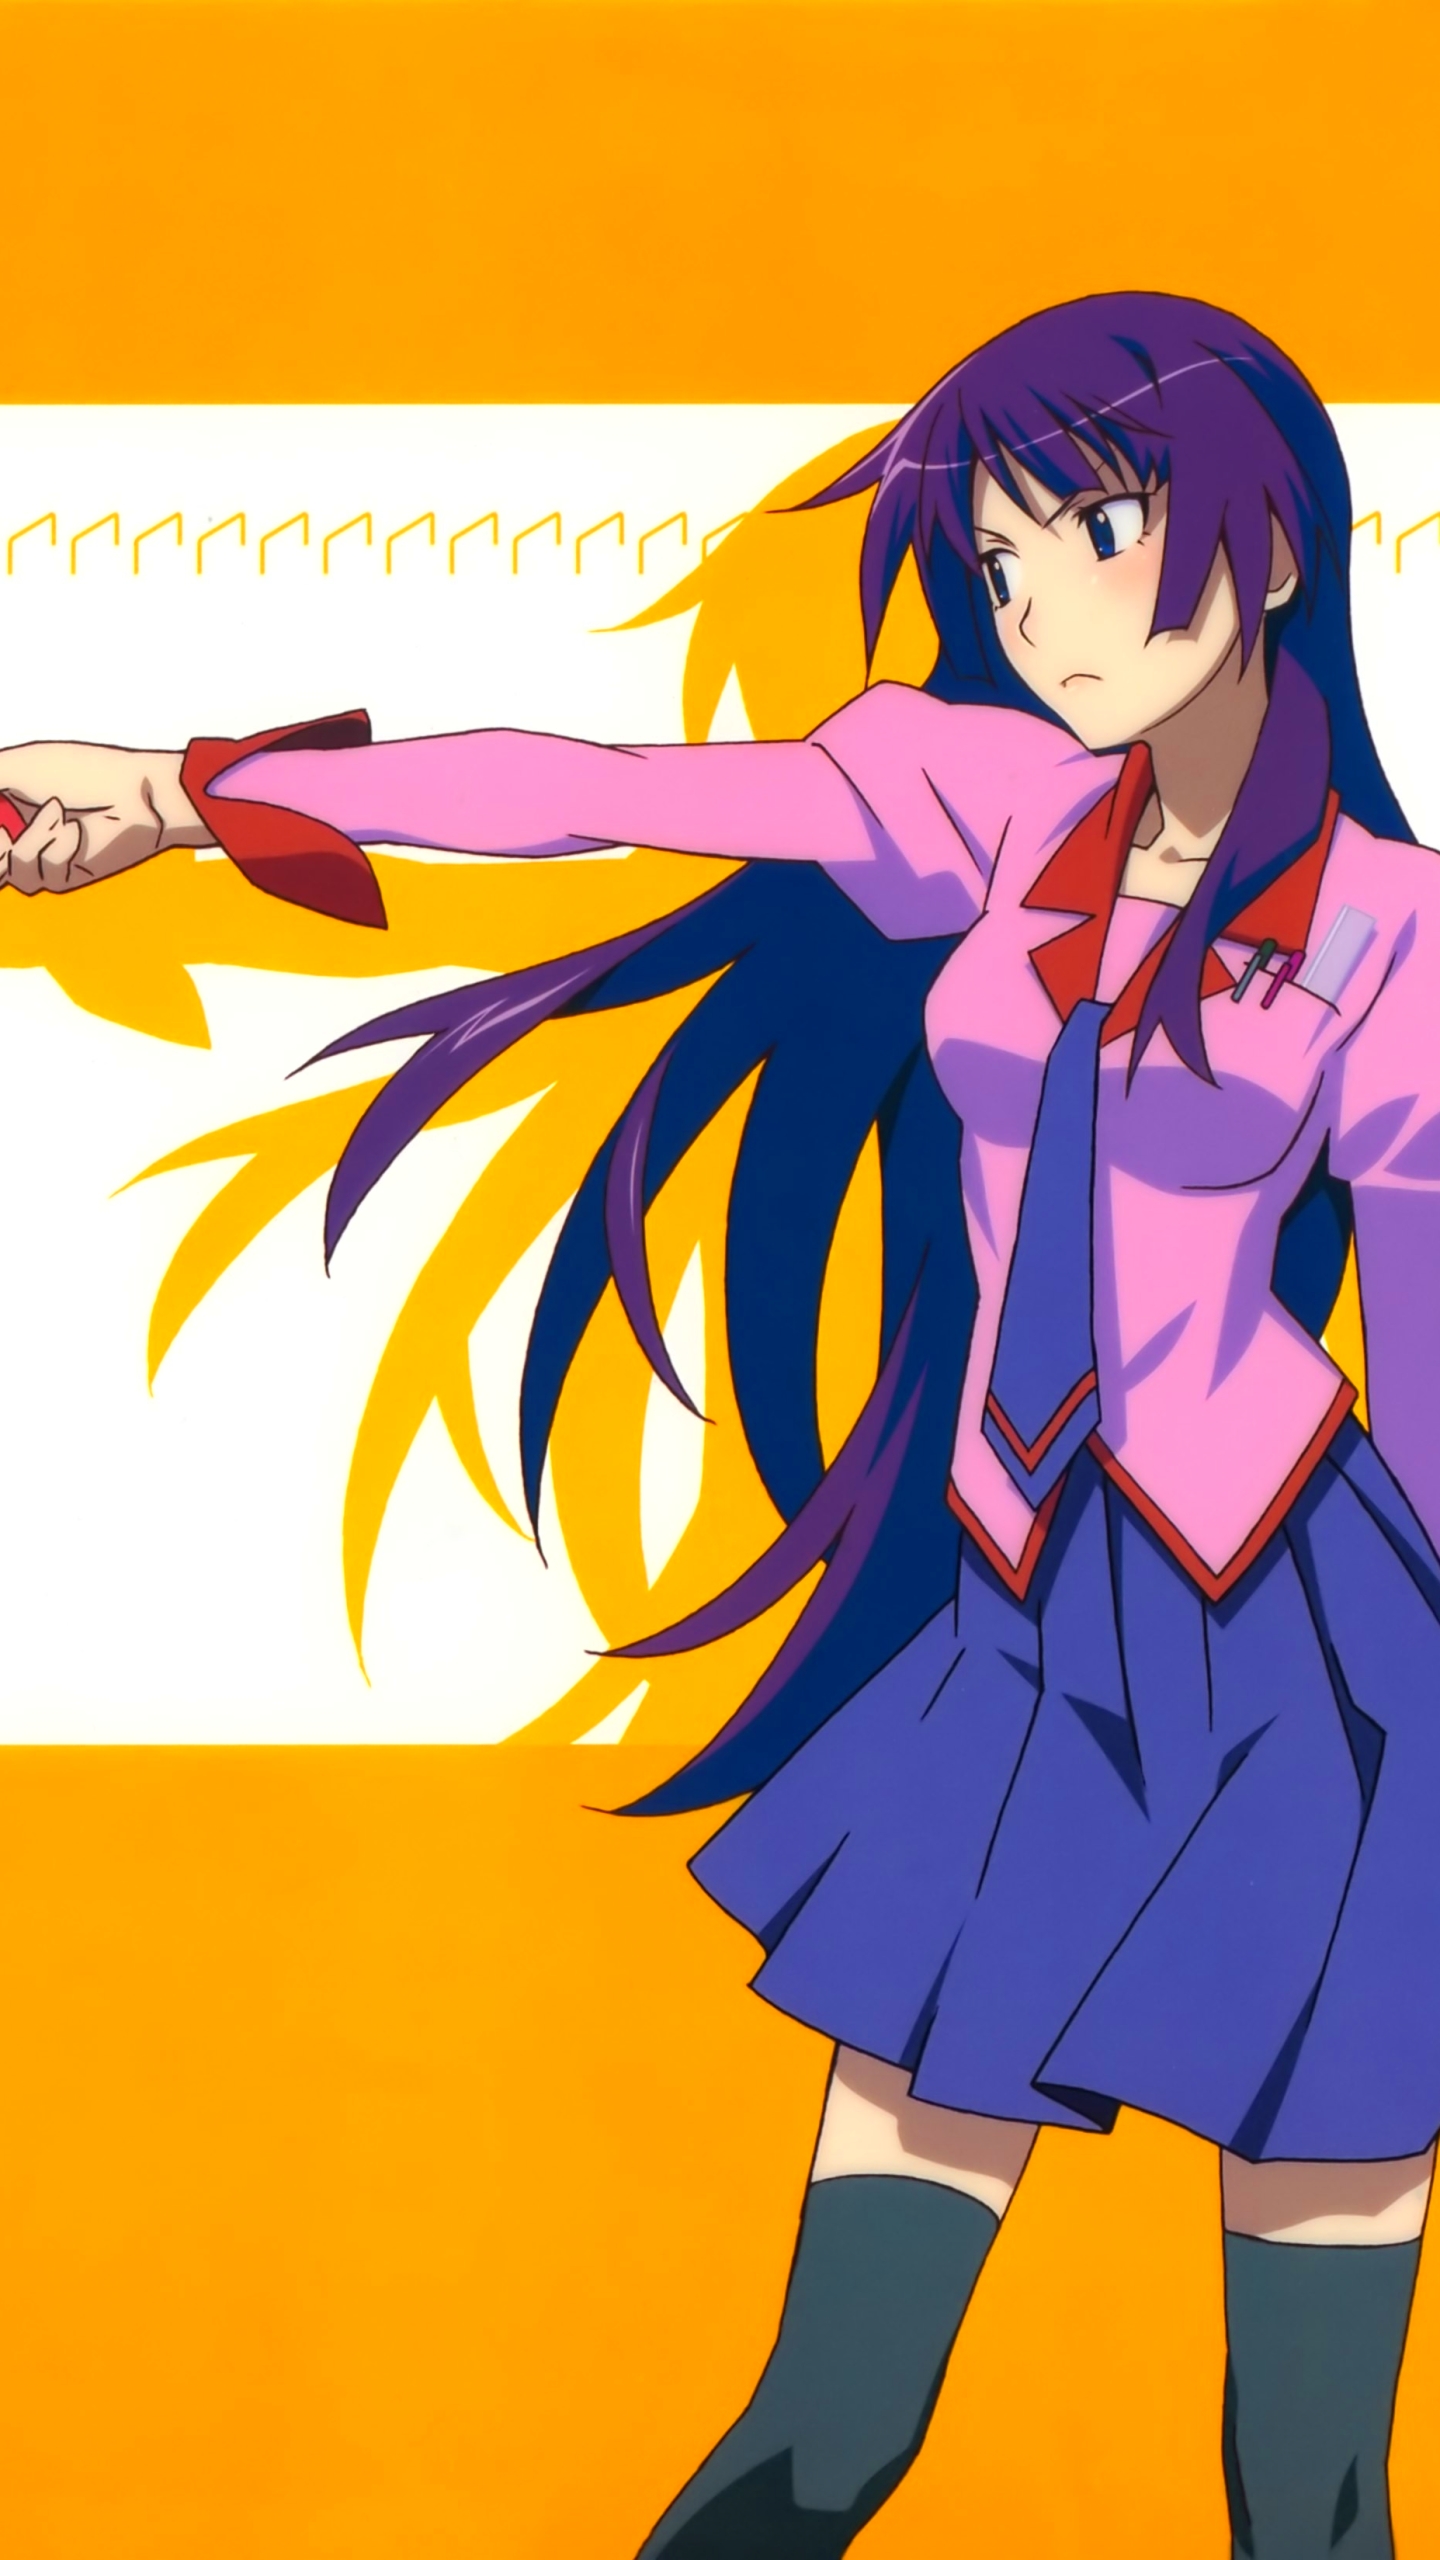 stapler as an anime girl｜TikTok Search